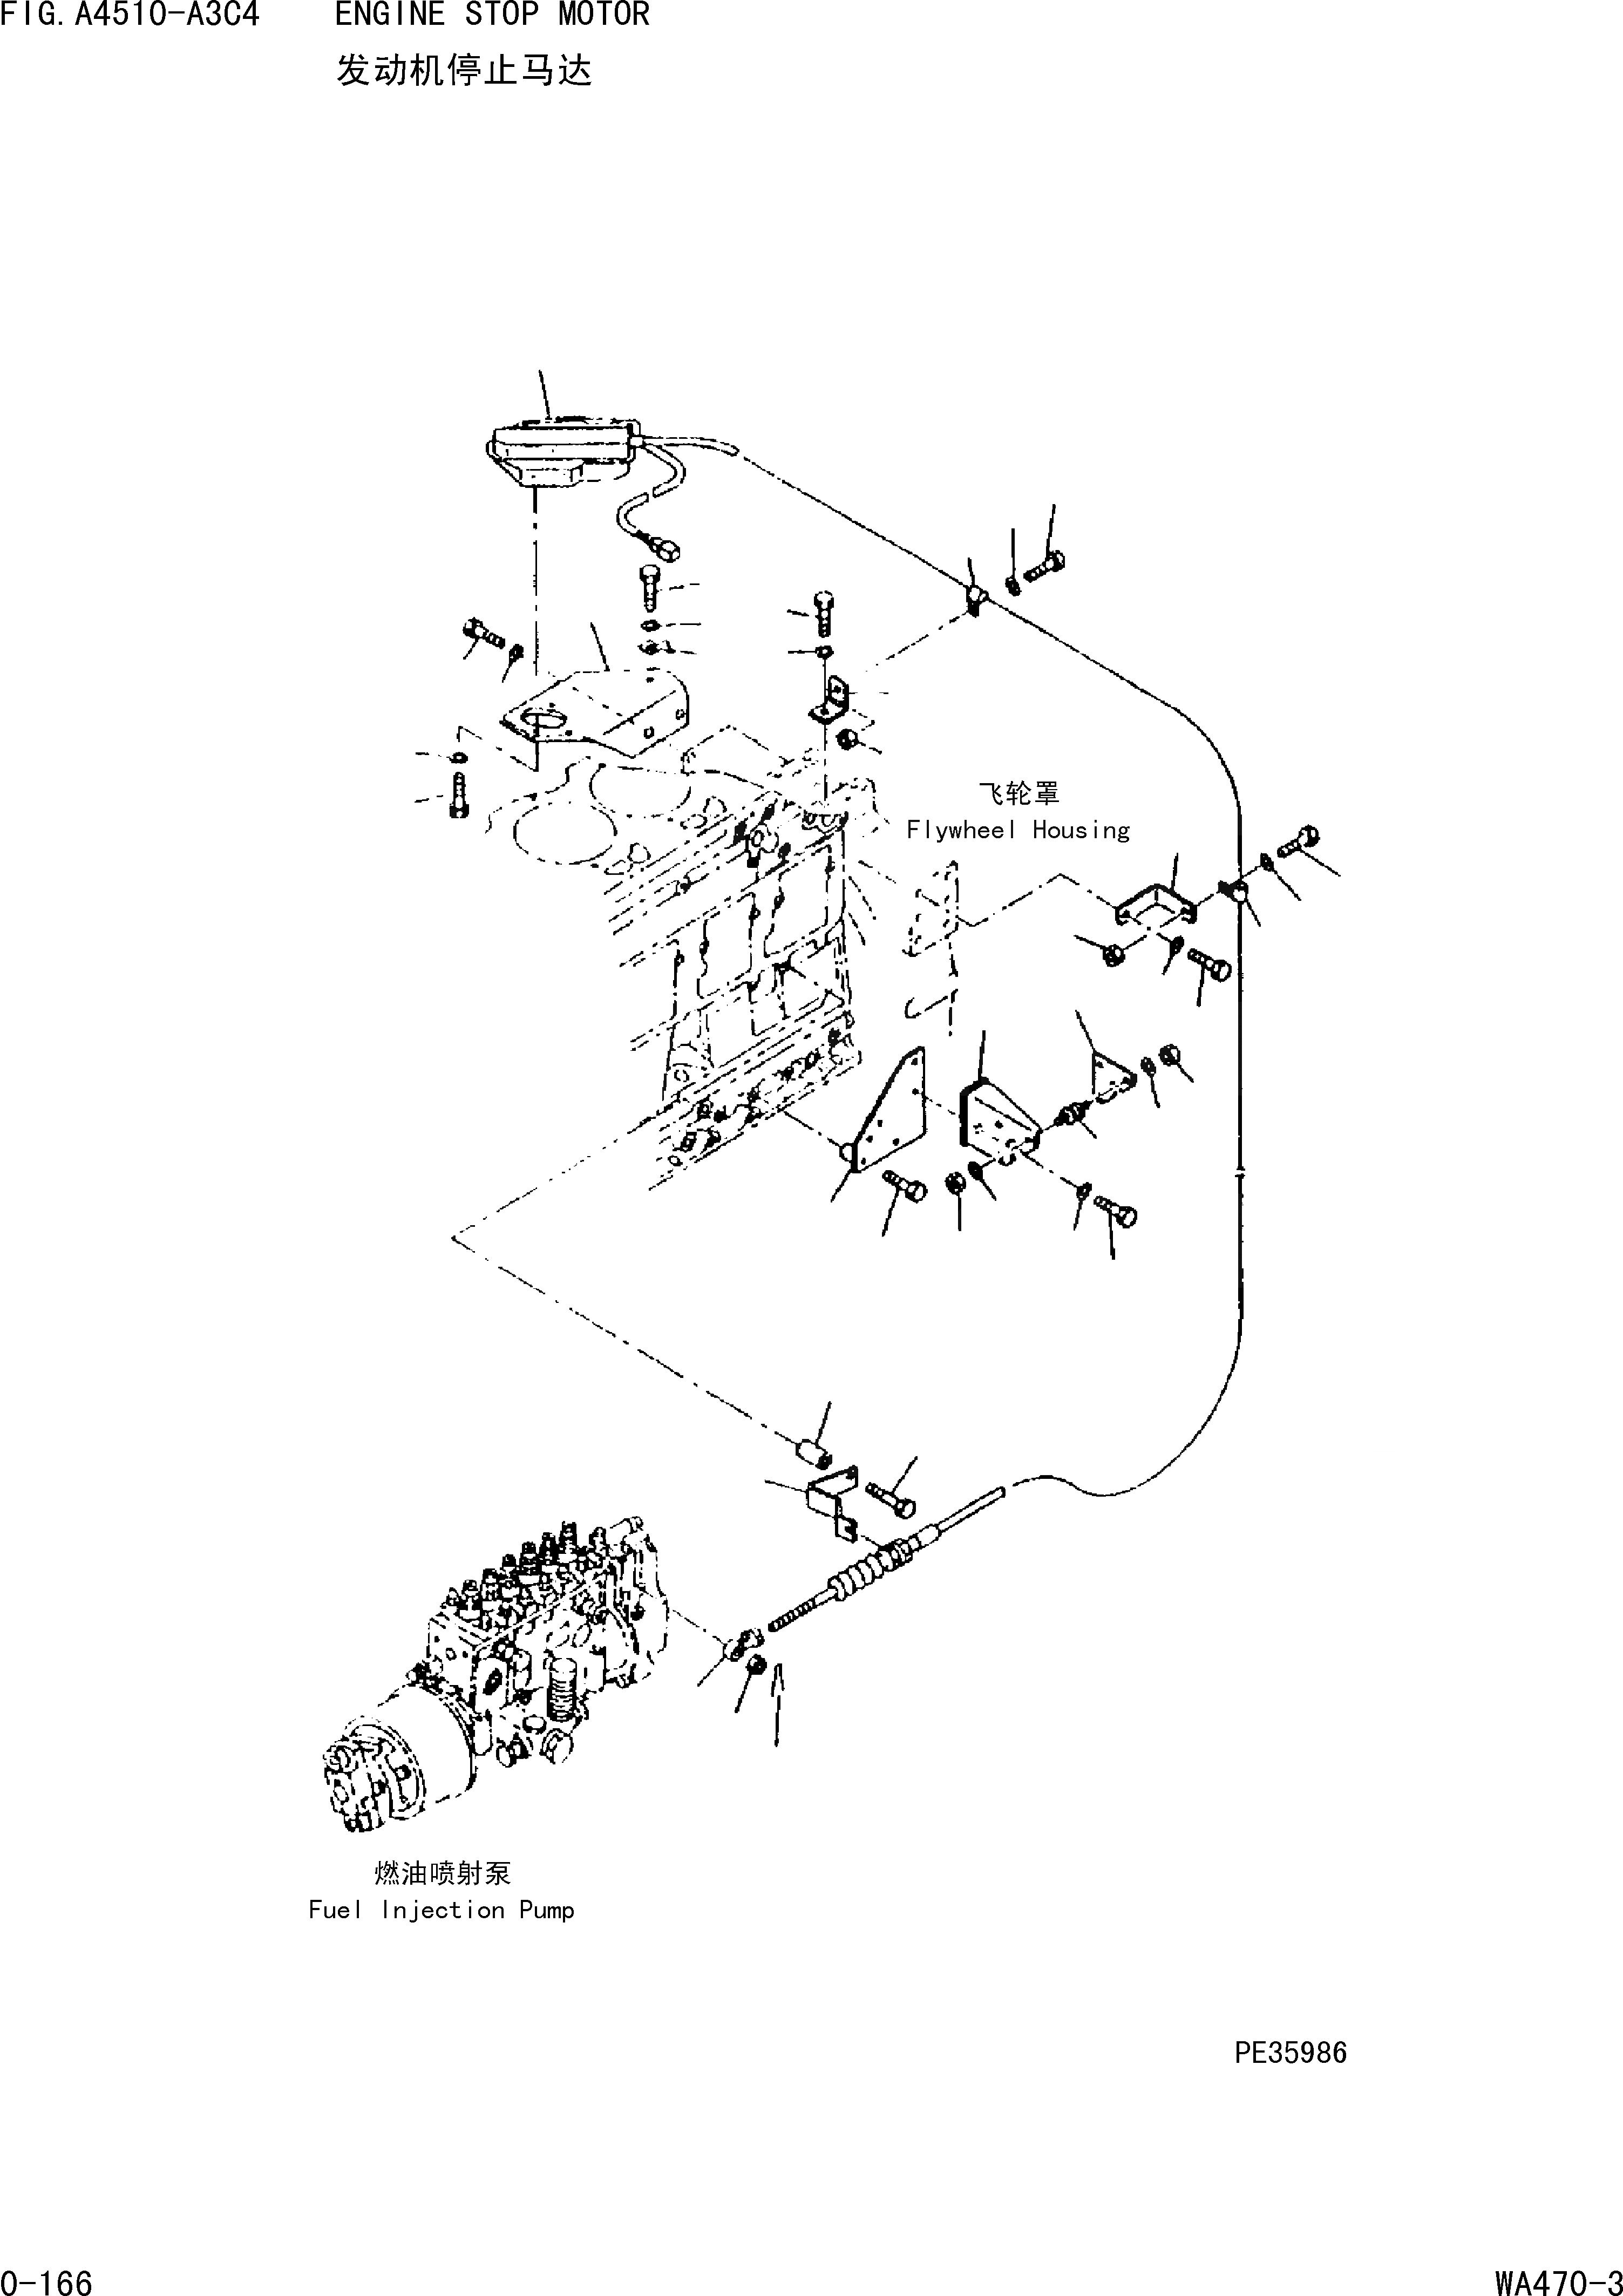 Схема запчастей Komatsu WA470-3 - СТОП МОТОР ДВИГАТЕЛЯ [ДВИГАТЕЛЬ]